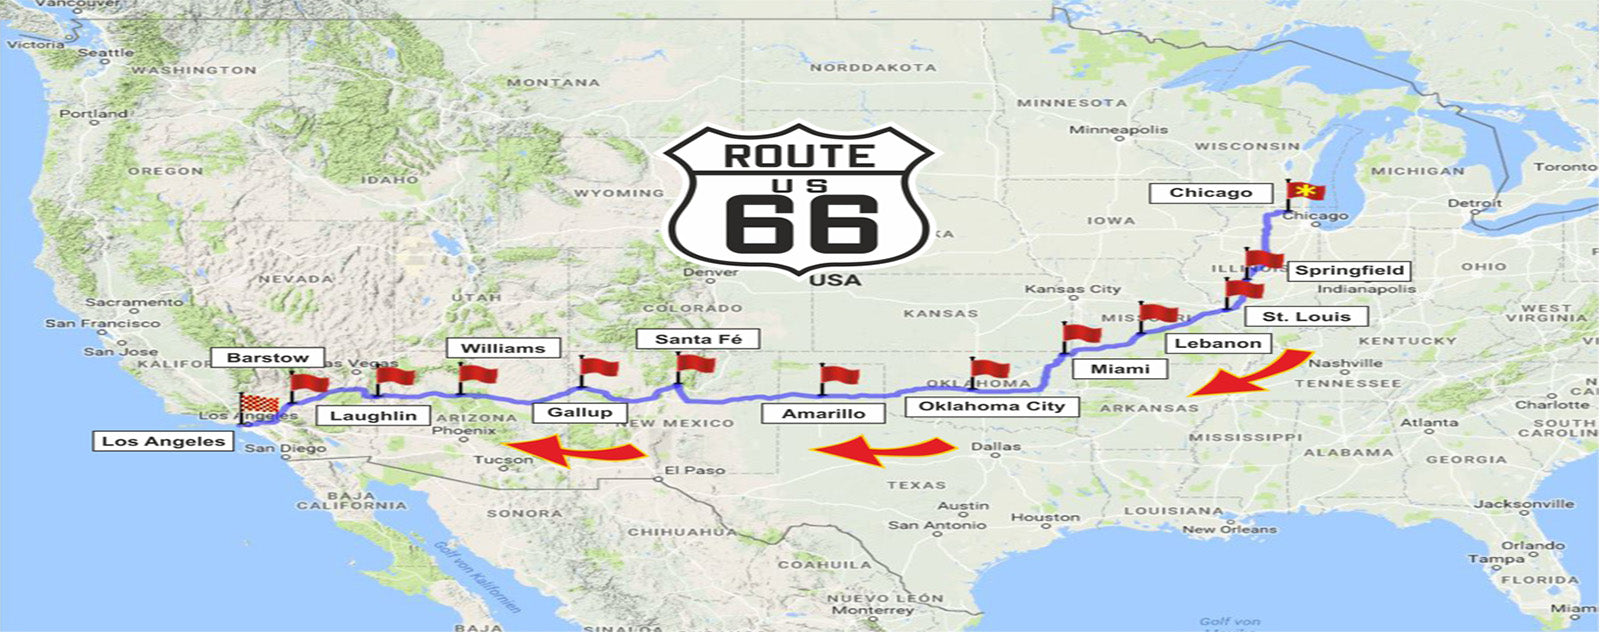 La Route 66 : carte, tracé, visites, conseils